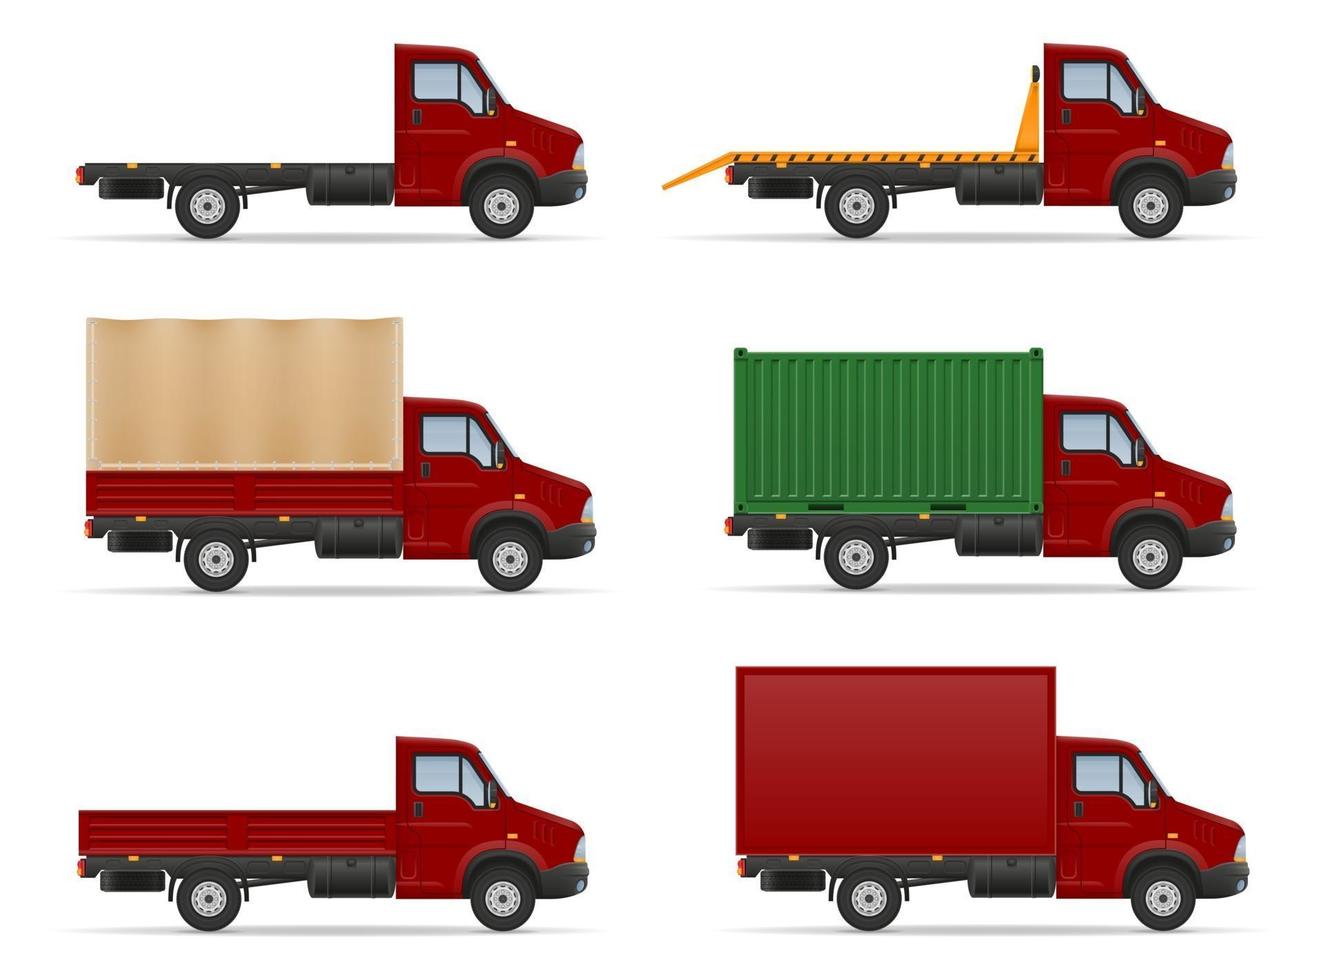 piccolo camion furgone camion per il trasporto di merci merci stock illustrazione vettoriale isolato su sfondo bianco